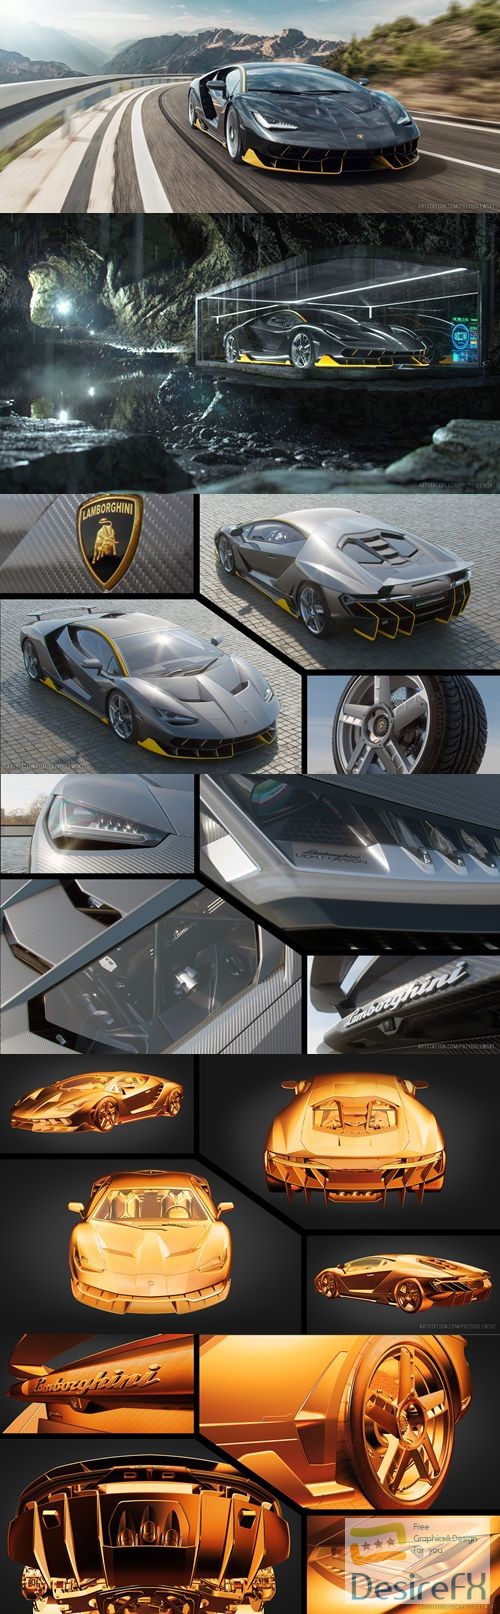 Lamborghini Centenario 3D Model